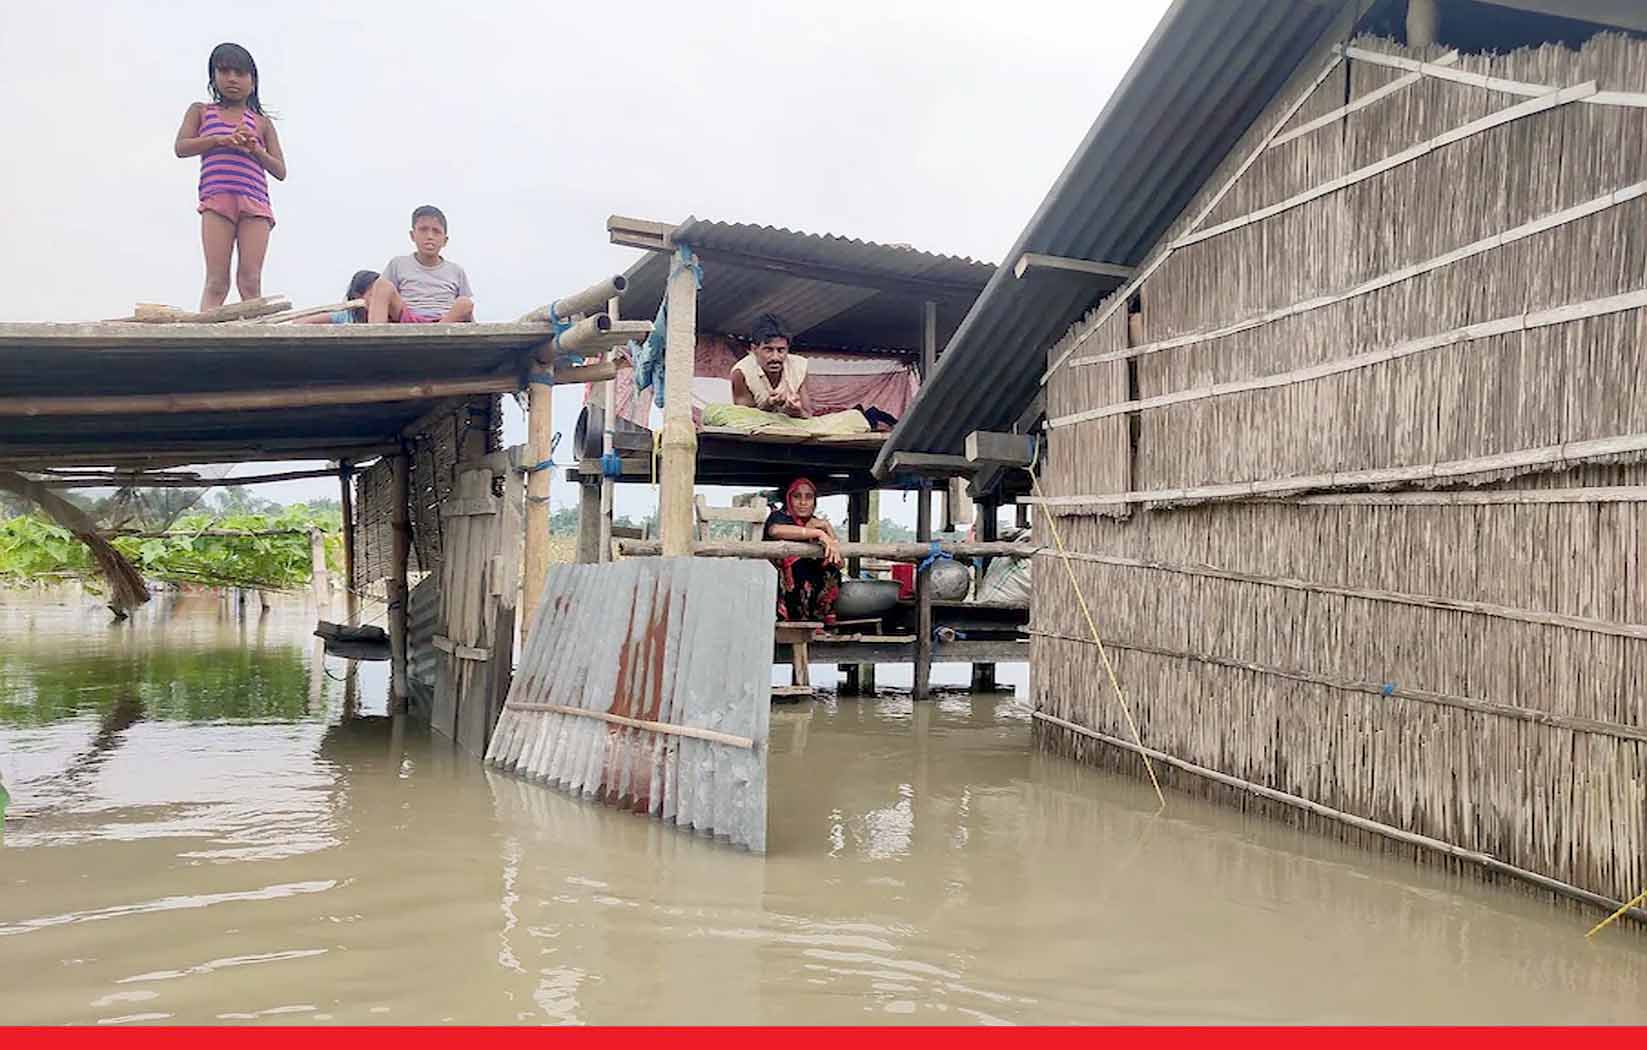 असम में बाढ़ का कहर: 32 जिलों में 55 लाख लोग प्रभावित, 101 की मौत, चारों ओर तबाही का मंजर